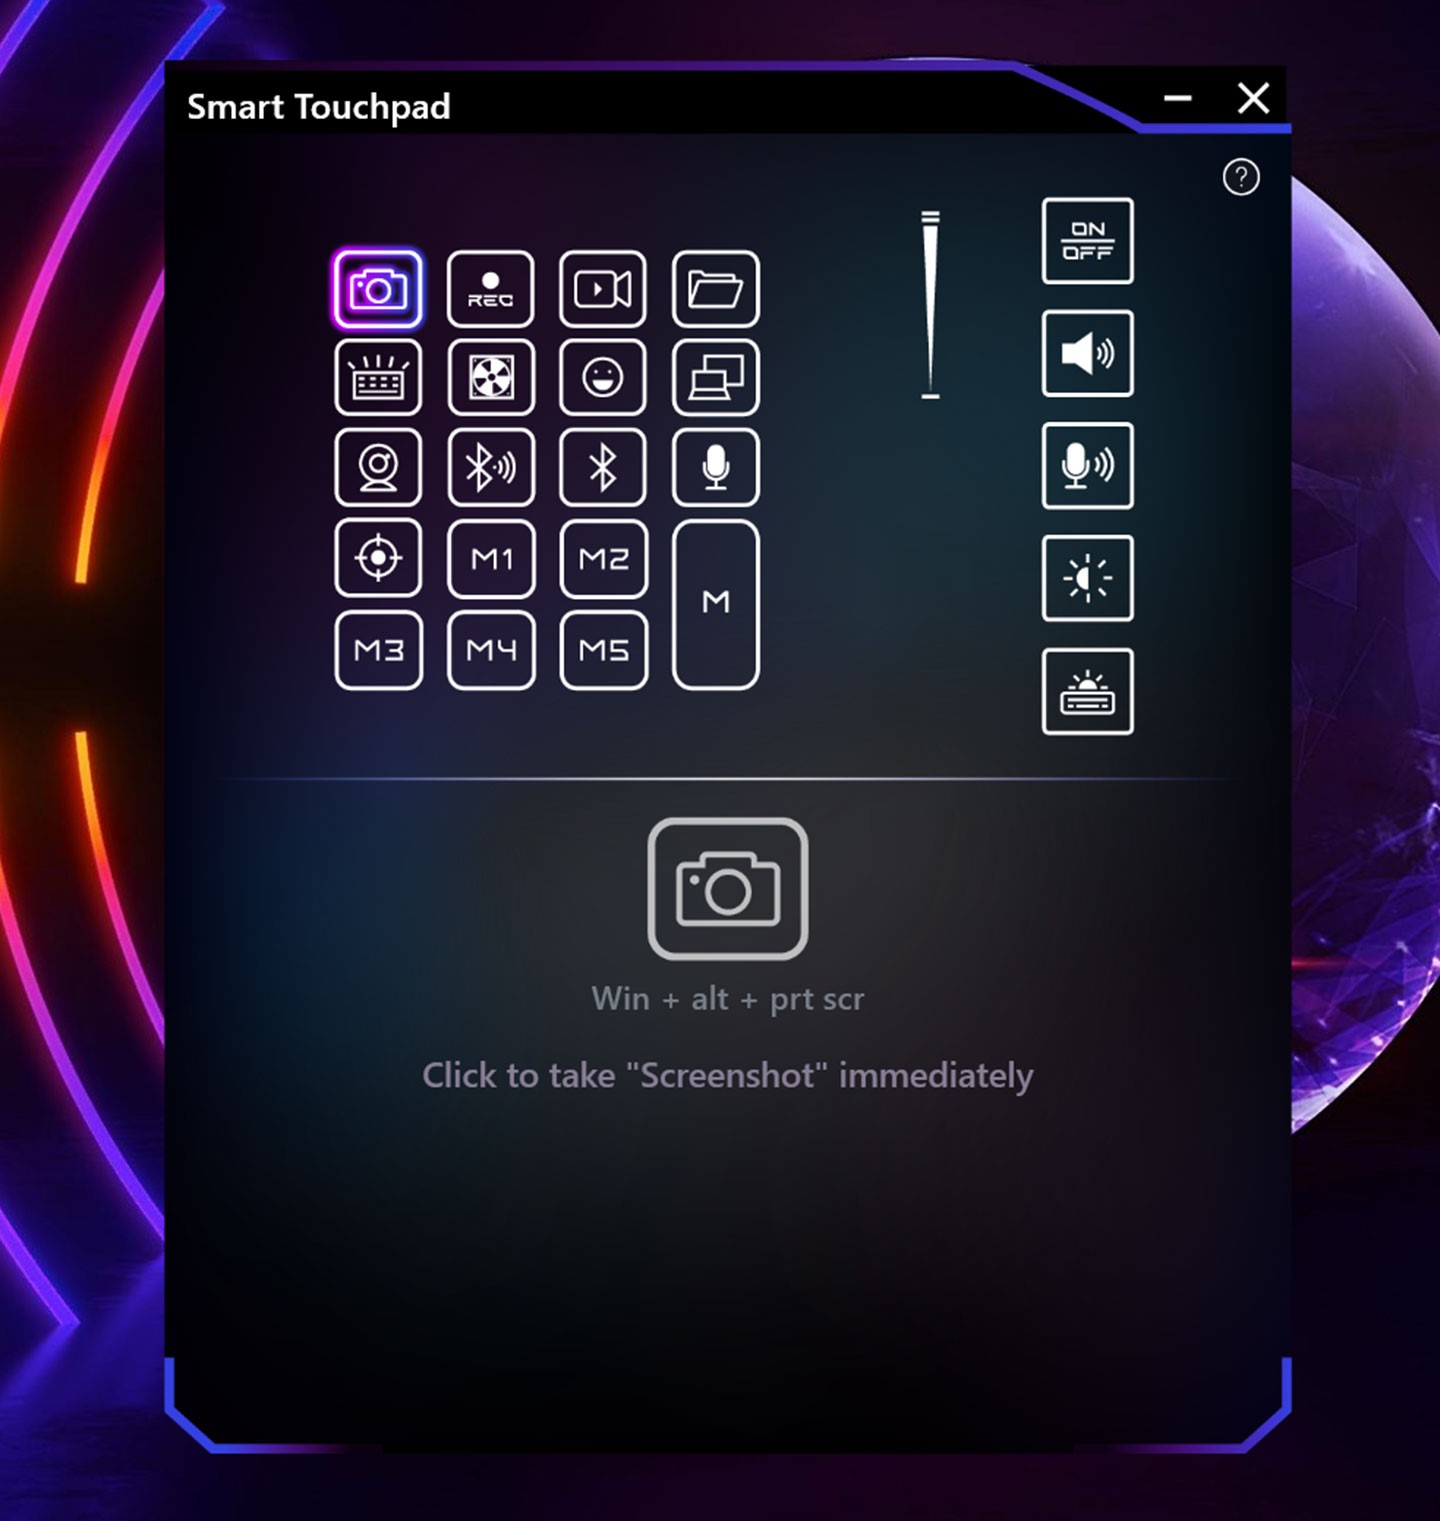 系統也內建對應的 Smart Touchpad 應用工具，點選畫面上的按鈕下方會有對應功能的說明。